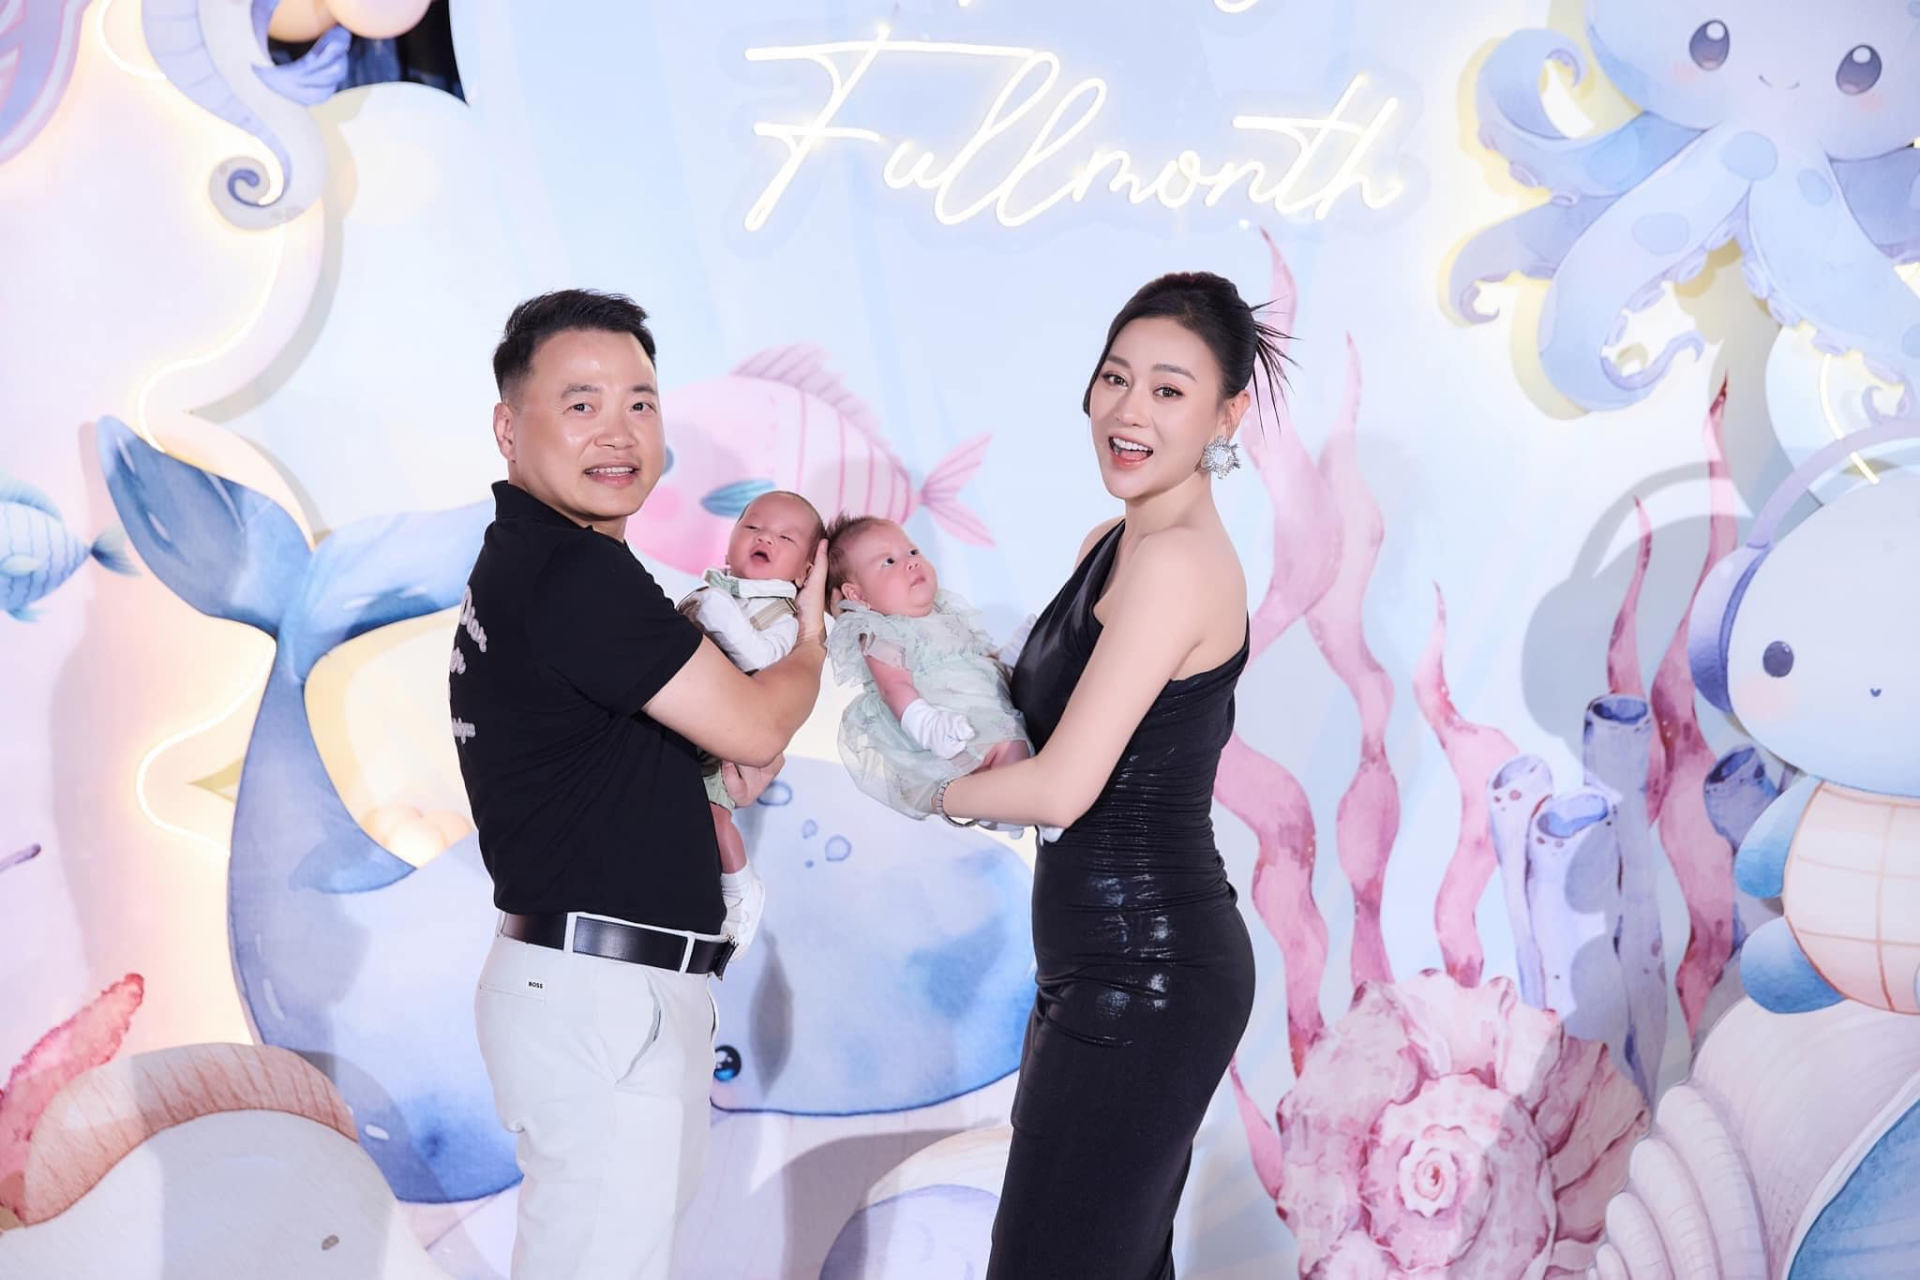 Diễn viên Phương Oanh khoe dáng bên Shark Bình trong tiệc đầy tháng 2 con sinh đôi - ảnh 2